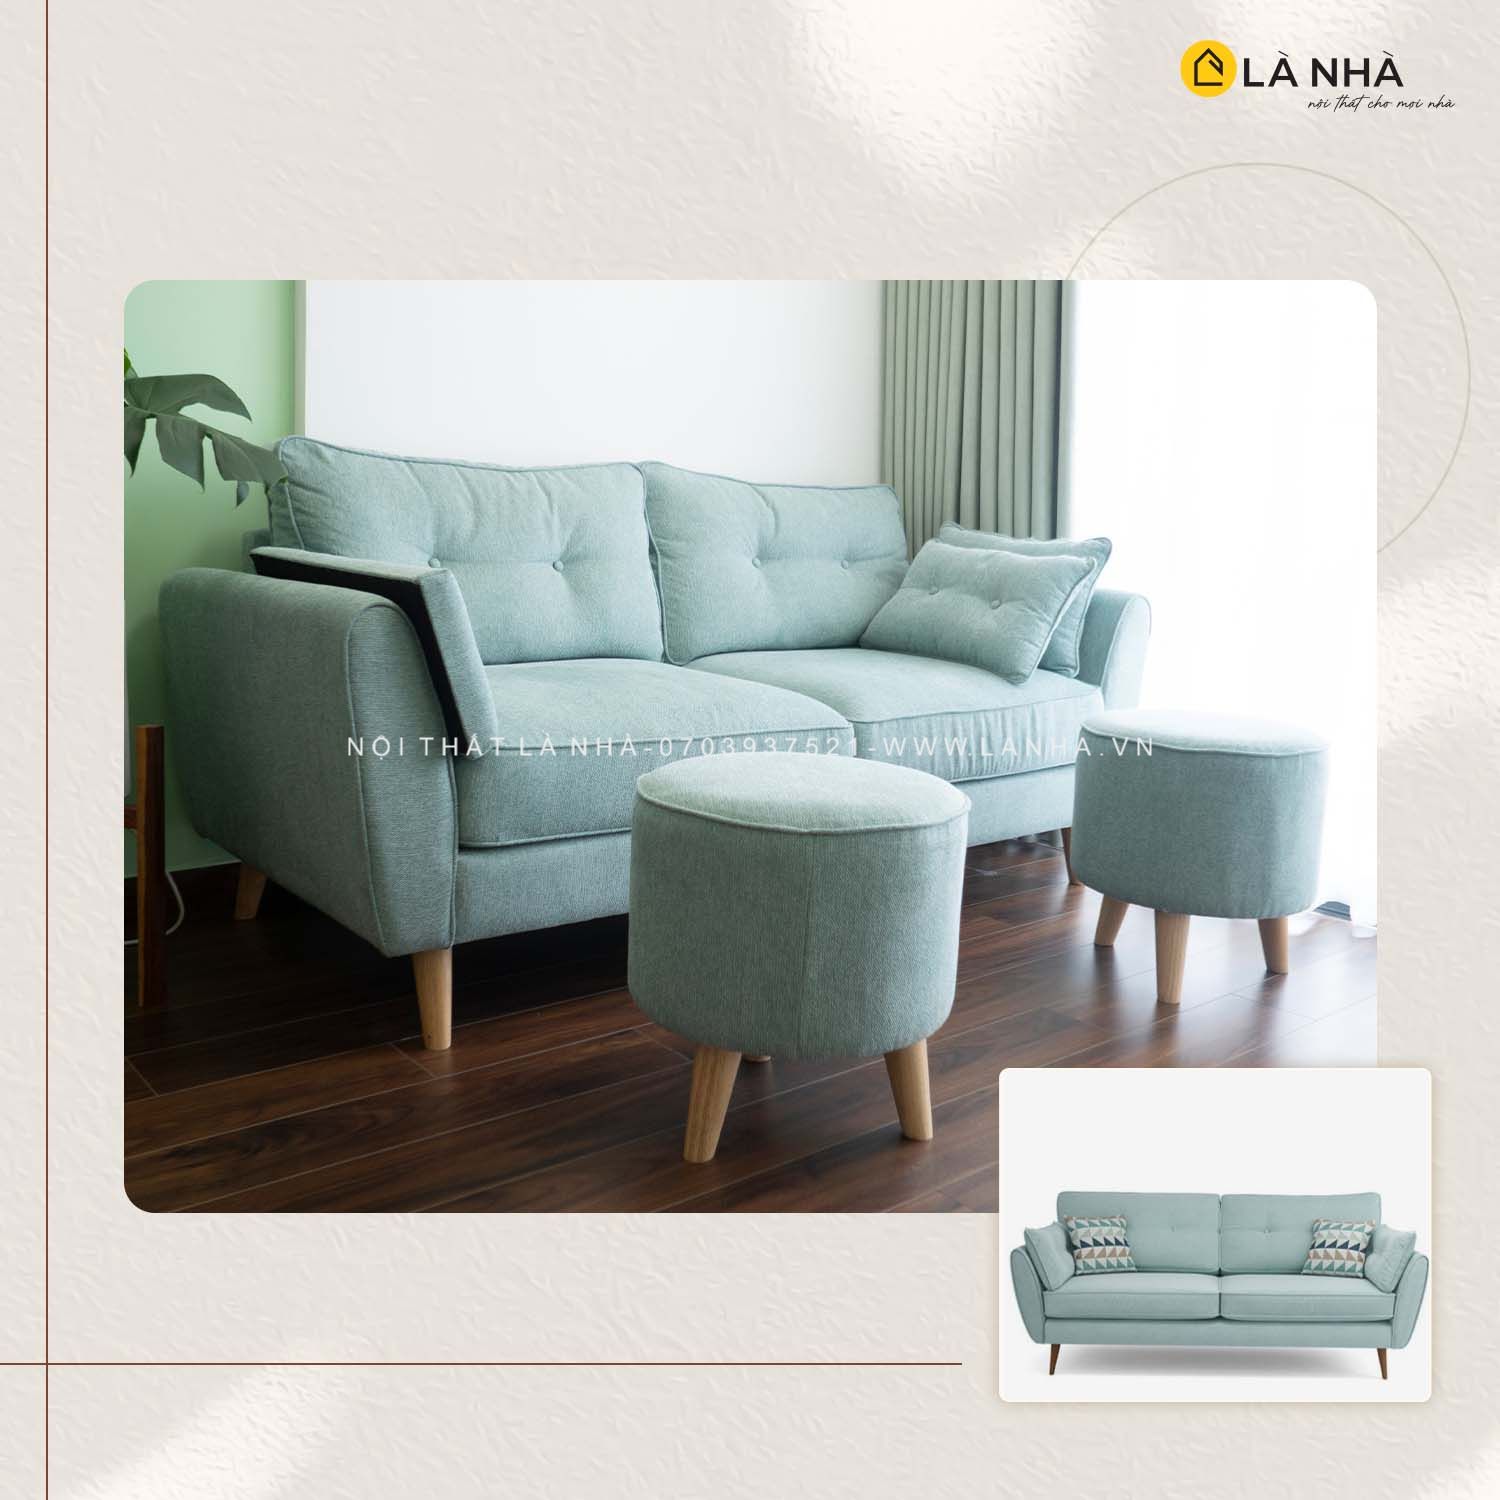 Với kích thước nhỏ hơn so với các mẫu sofa lớn, chúng phù hợp cho các căn hộ hay phòng khách có diện tích hạn chế